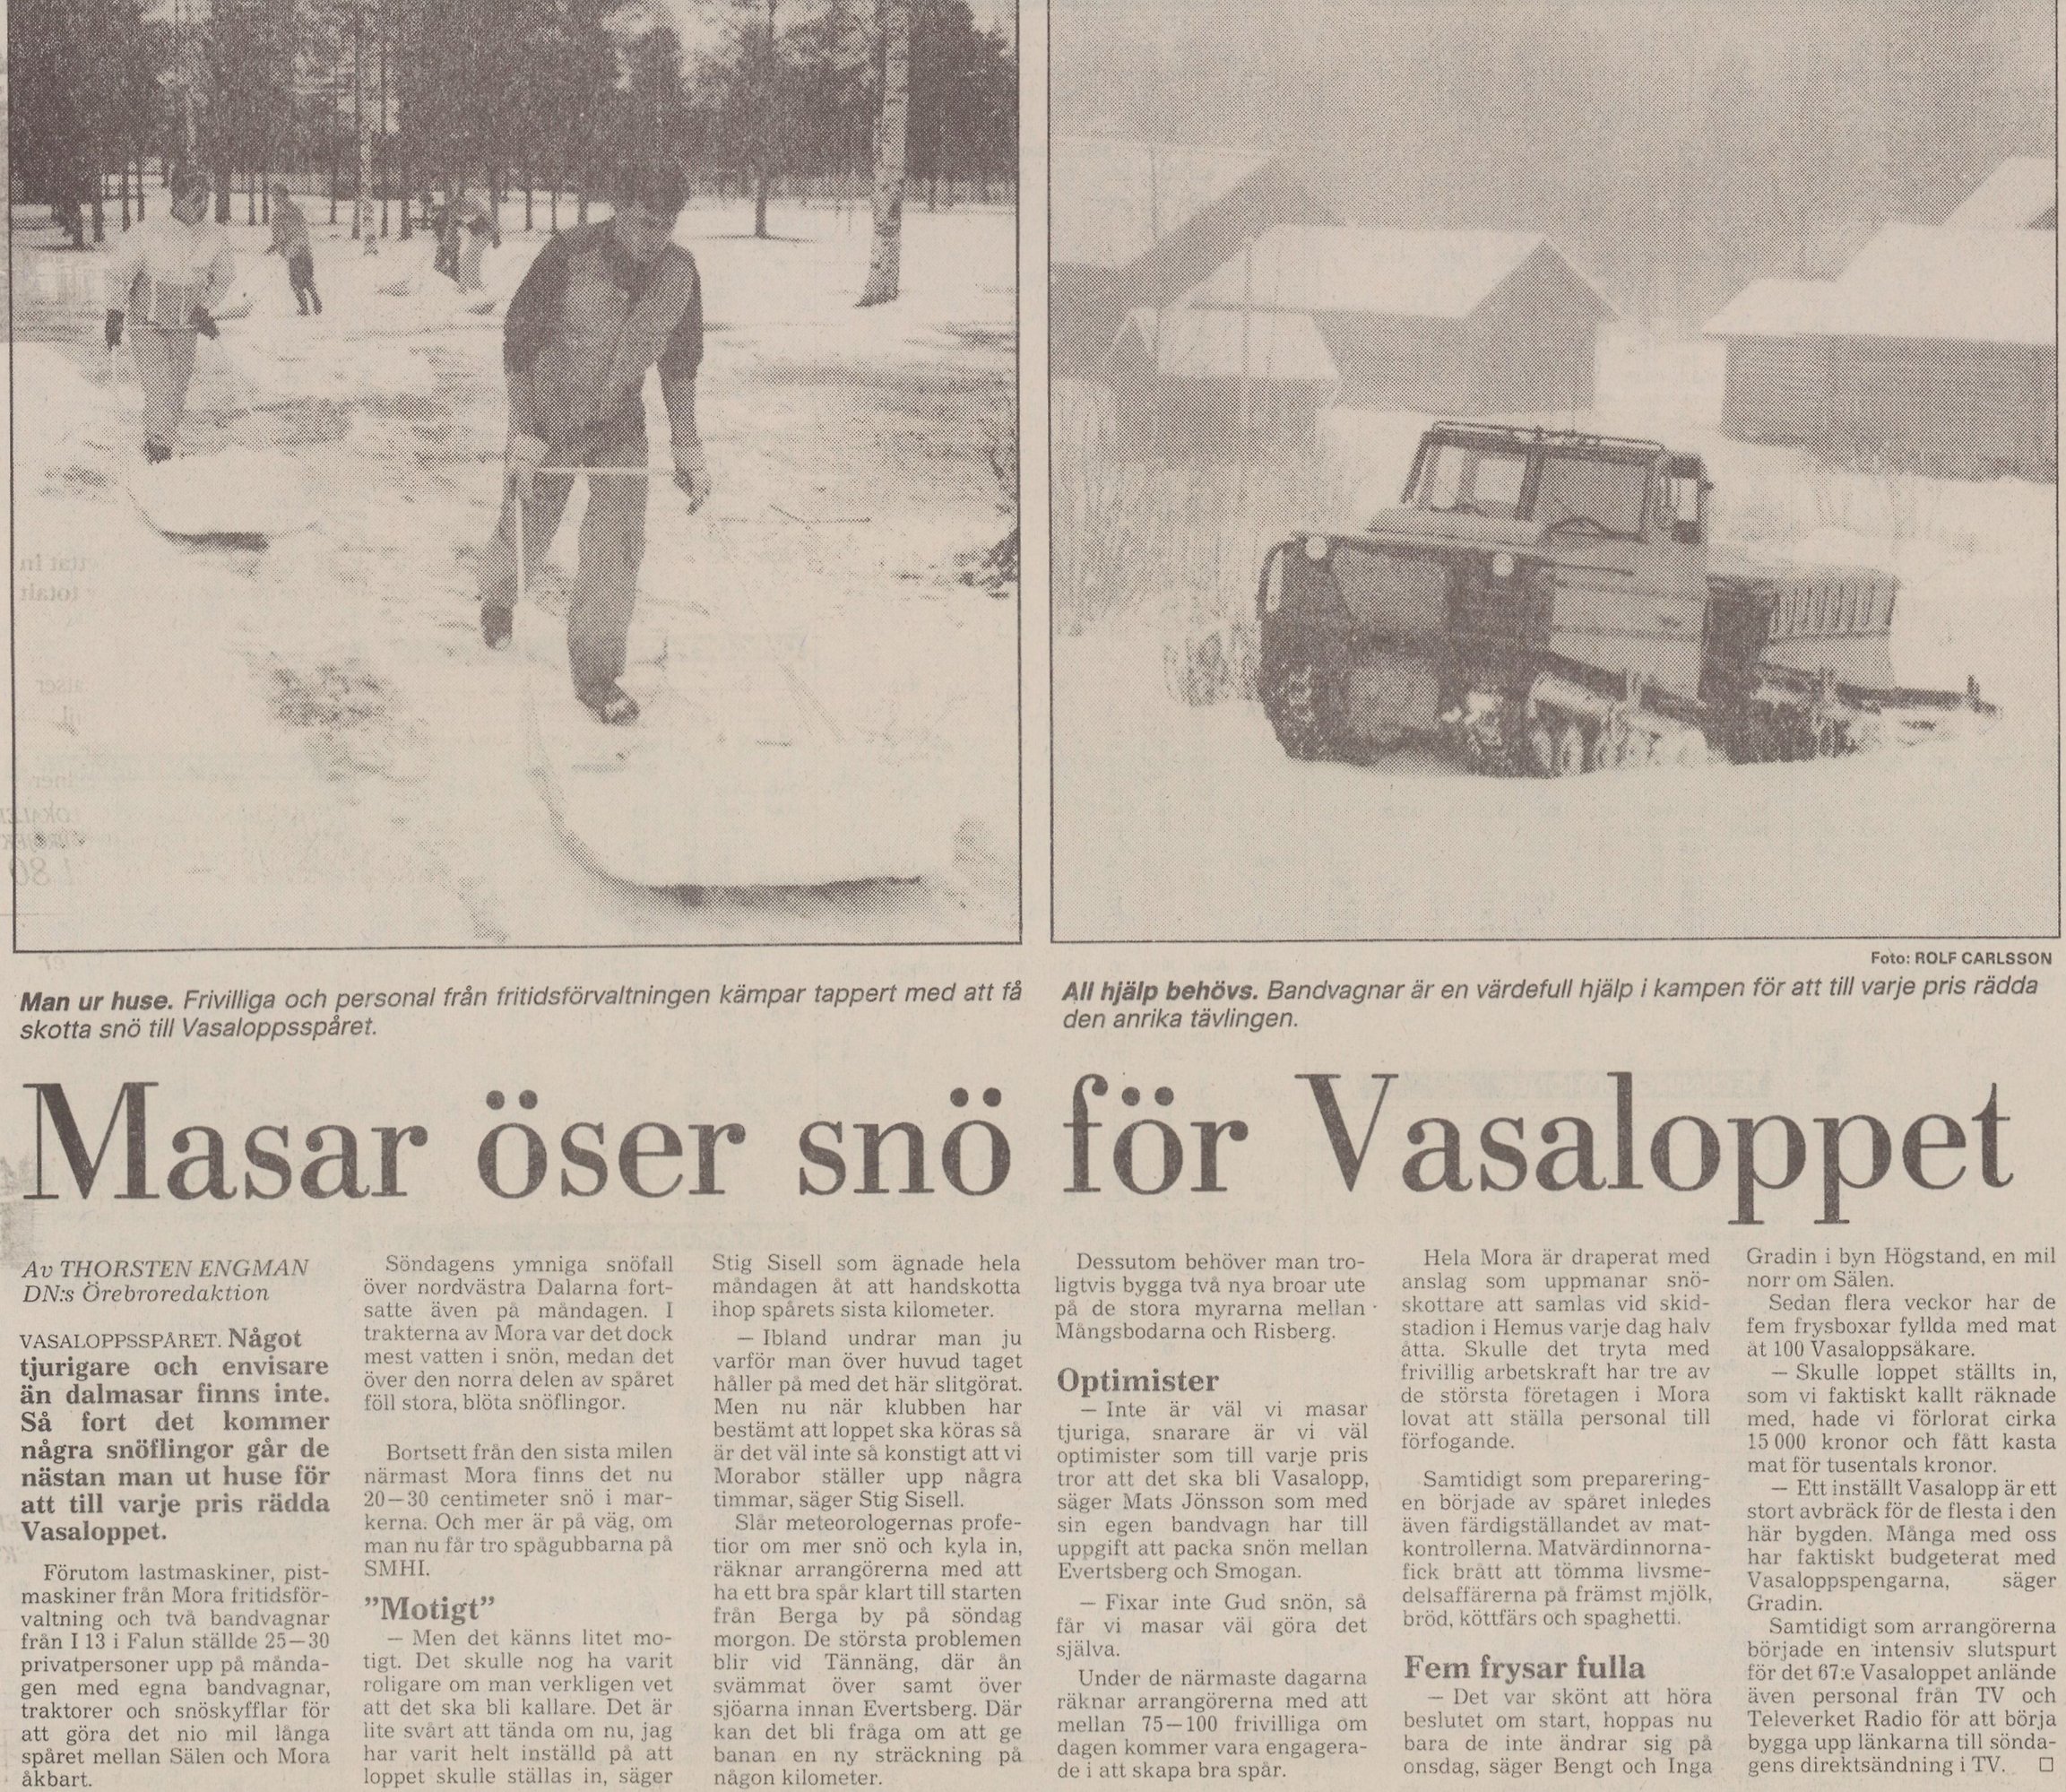 Tidningsklipp, bilder på människor som skyfflar snö och bandvagn Text: Masar öser snö för Vasaloppet.